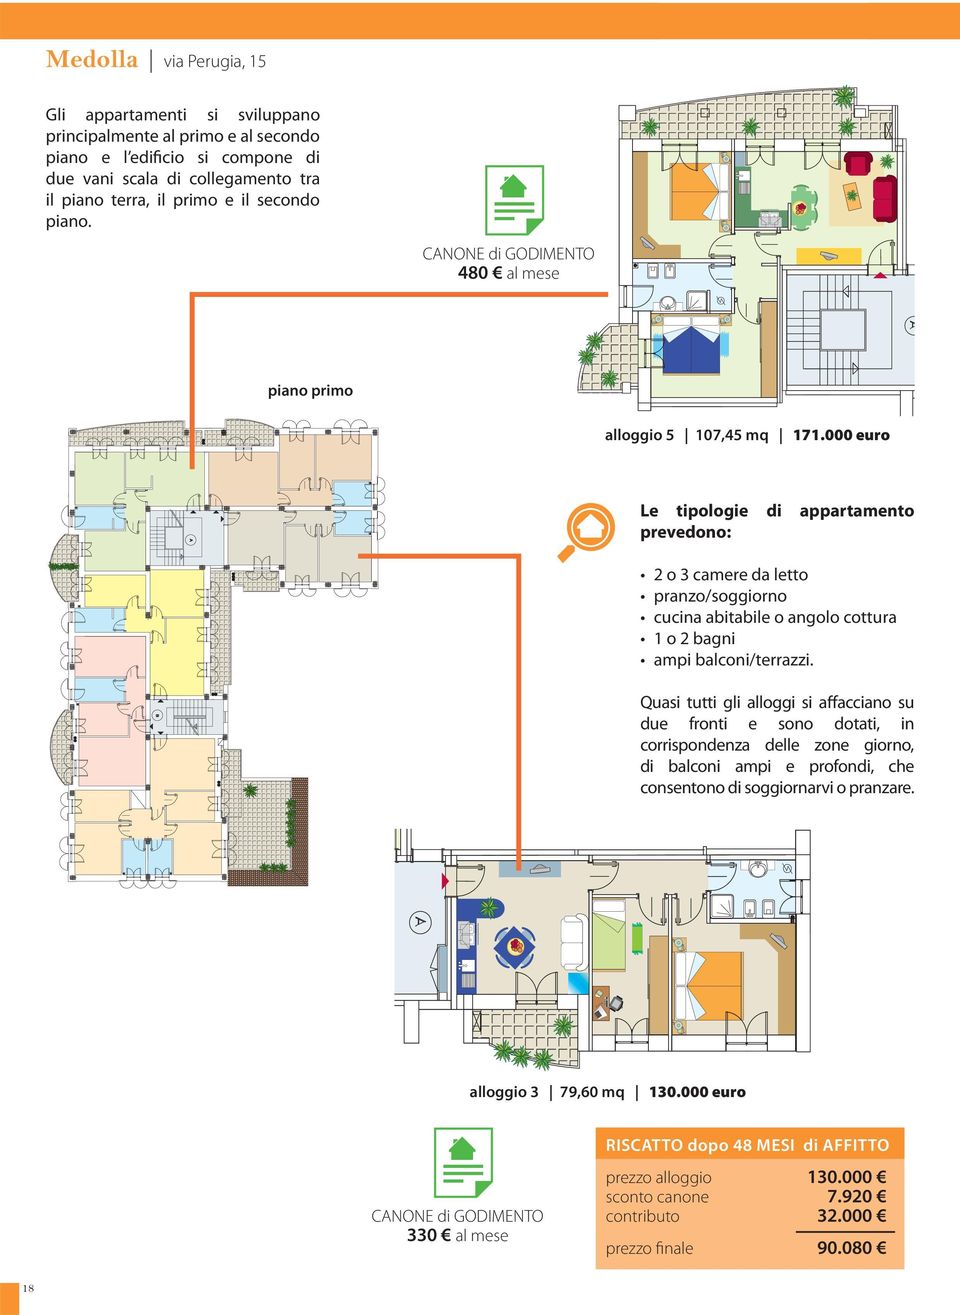 000 euro Le tipologie di appartamento prevedono: 2 o 3 camere da letto pranzo/soggiorno cucina abitabile o angolo cottura 1 o 2 bagni ampi balconi/terrazzi.